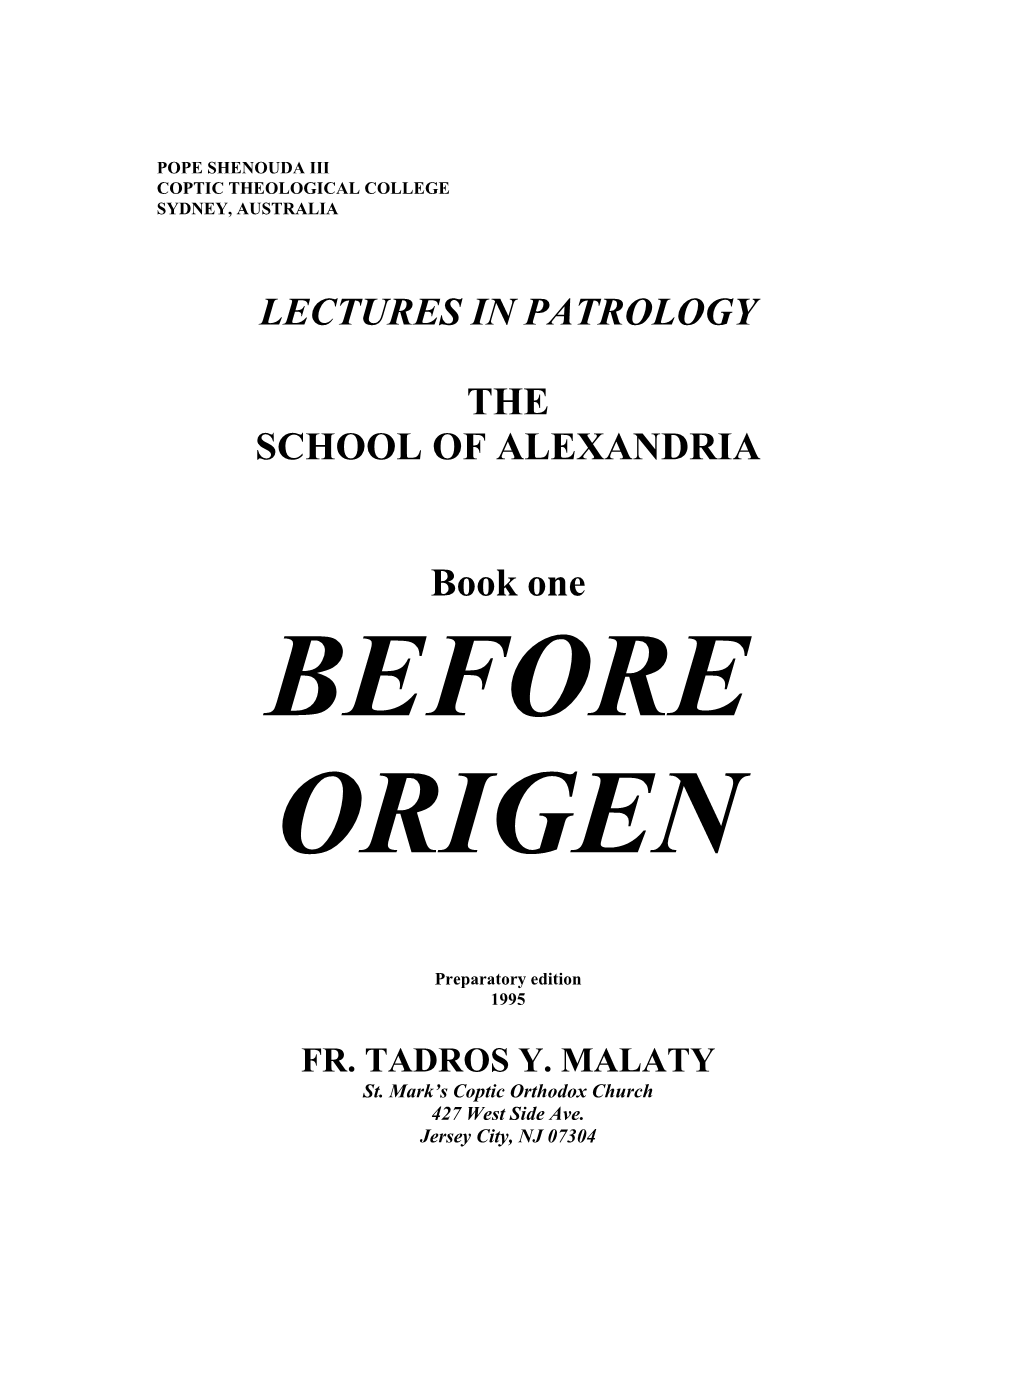 Before Origen